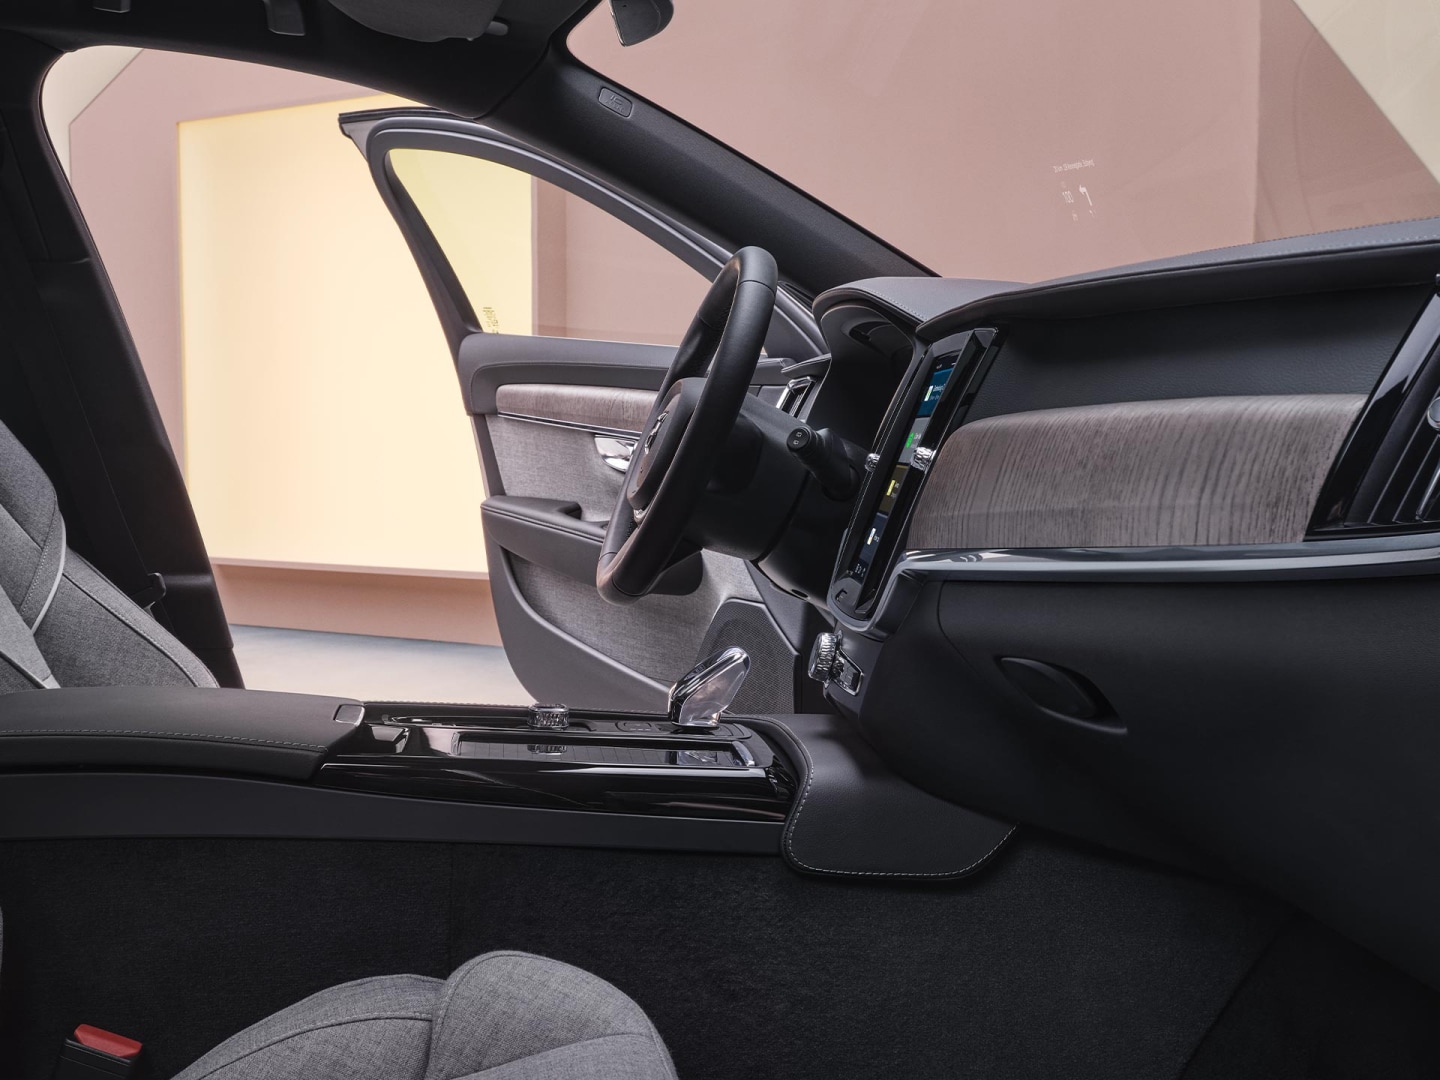 Vista interior da Volvo V90 híbrida plug-in do lado do passageiro dianteiro.